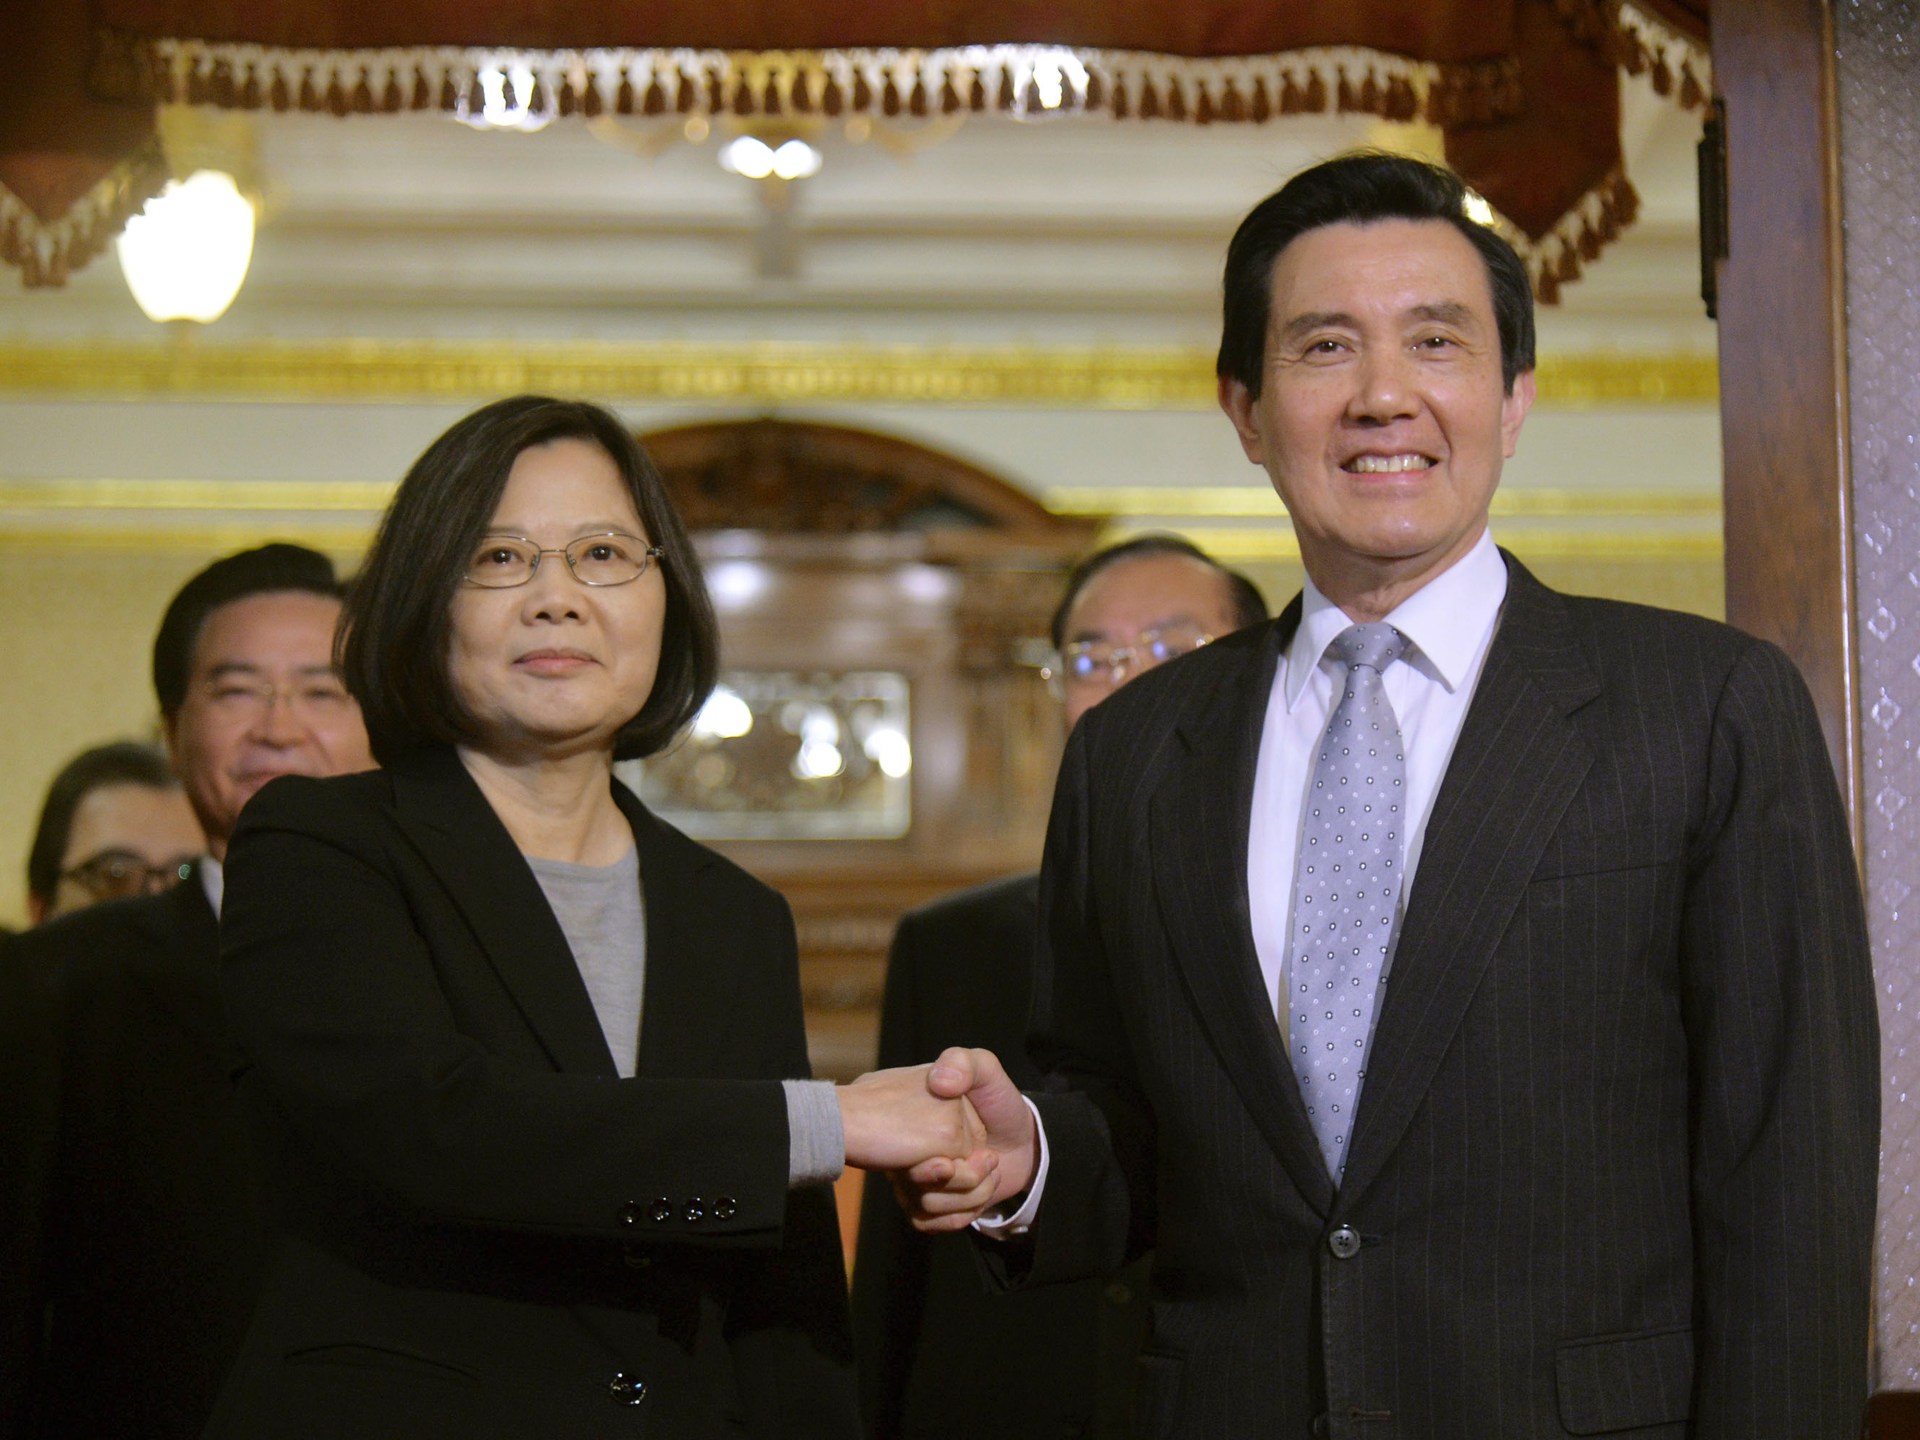 La Cina accoglie con favore il piano di visita dell’ex presidente di Taiwan  Notizie di politica